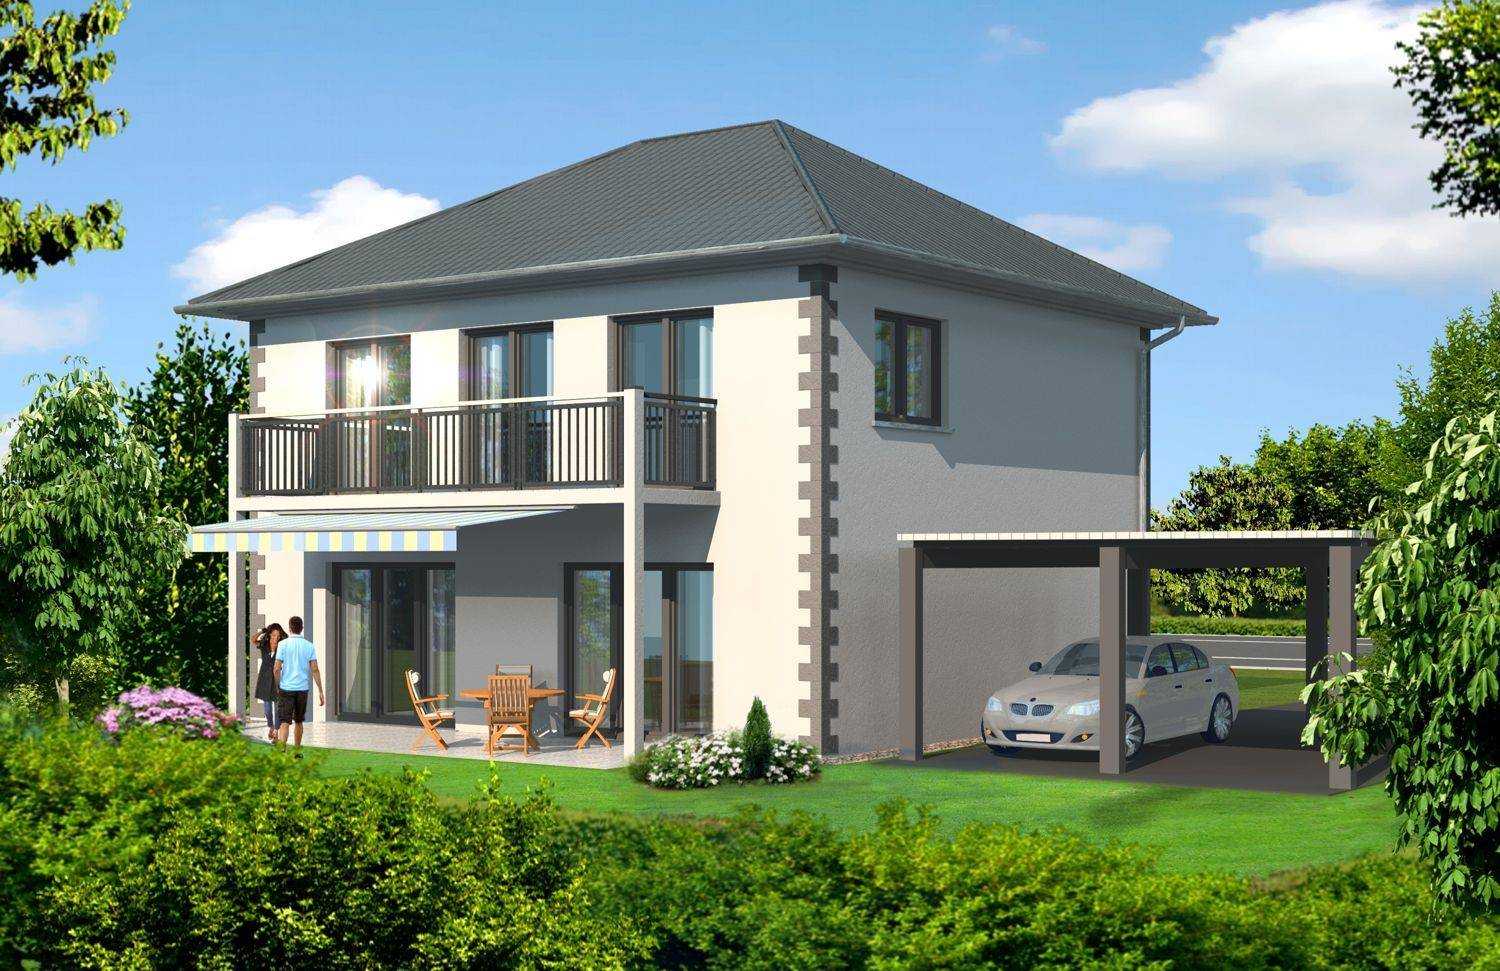 Architektur-Visualisierung in 3D des Projektes `Guntli` Einfamilienhauses in Buchs / Schweiz für Immofocus Real-Estate Sulutions aus Sachseln / Schweiz (Jahr 2009)